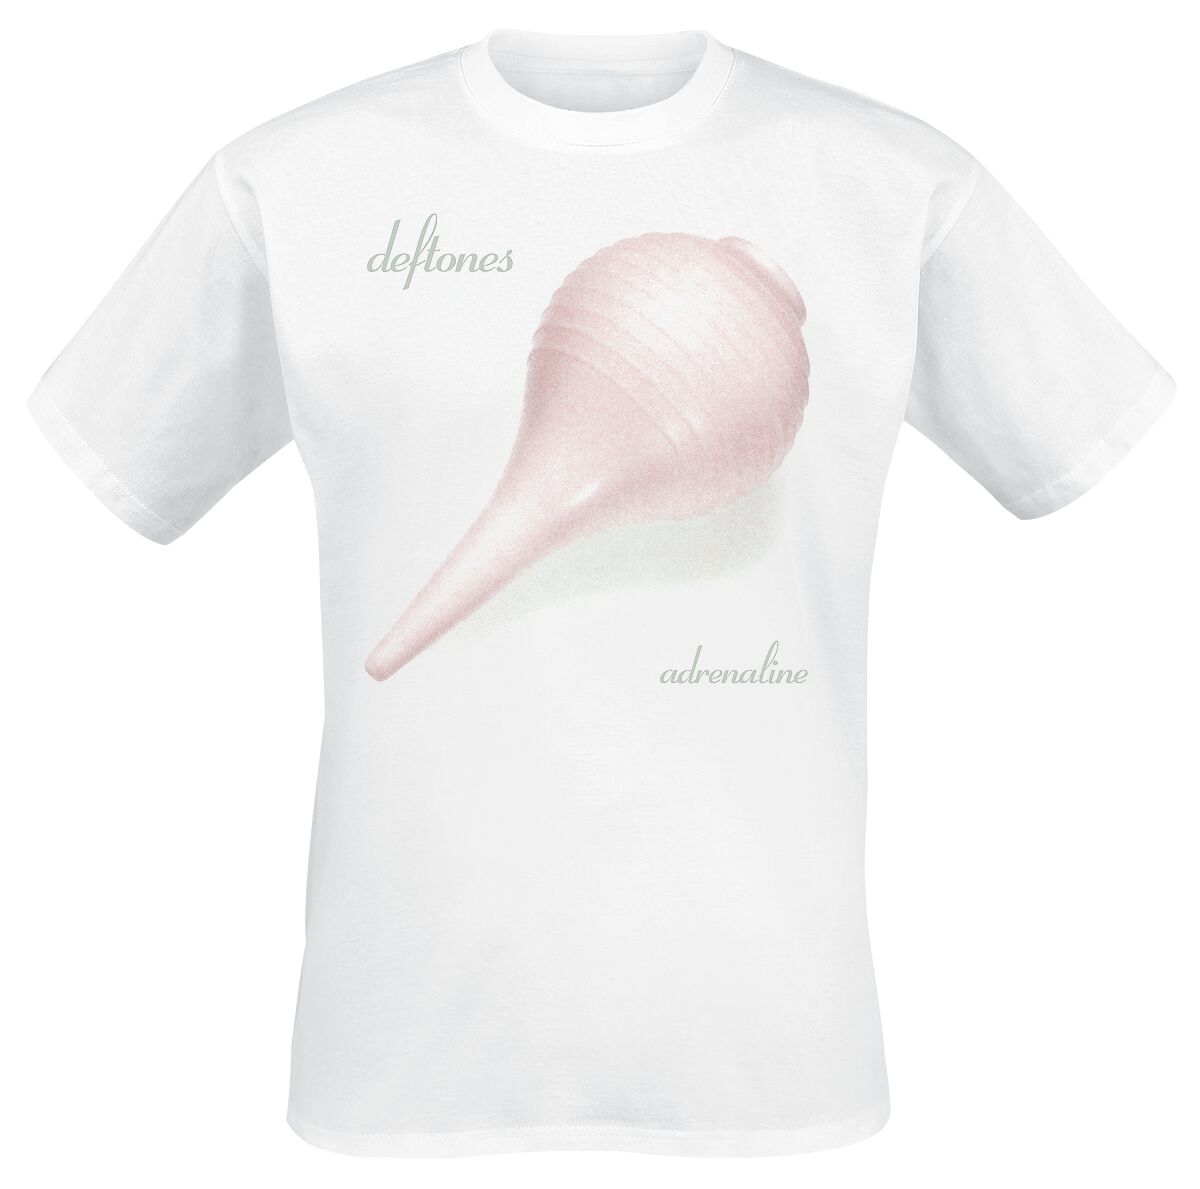 Deftones Album Adrenaline T-Shirt white